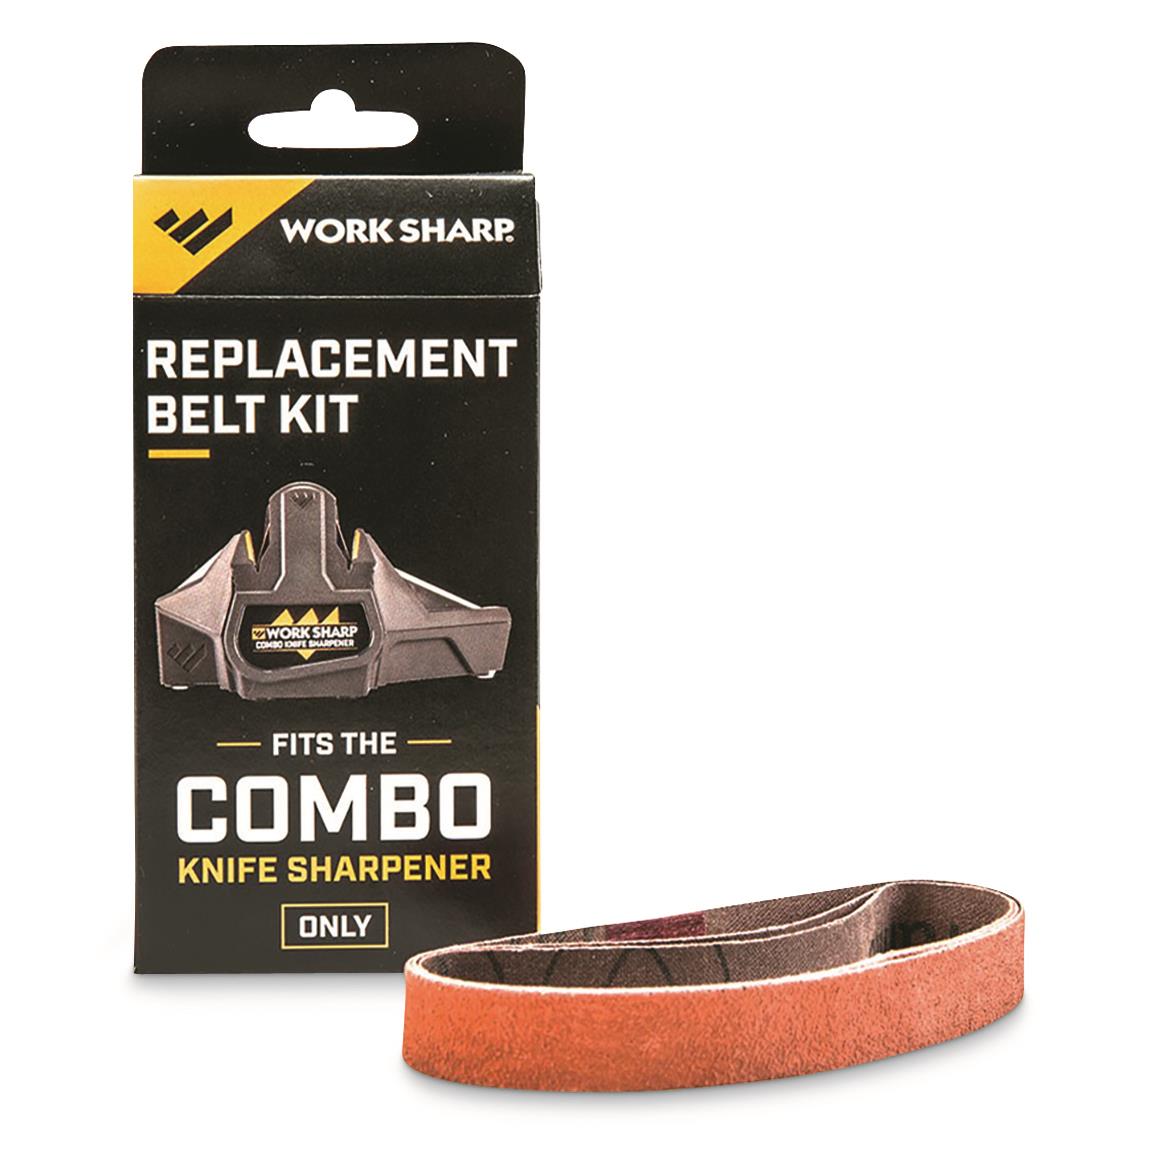 Work Sharp Replacement Belt Kit for Combo Knife Sharpener